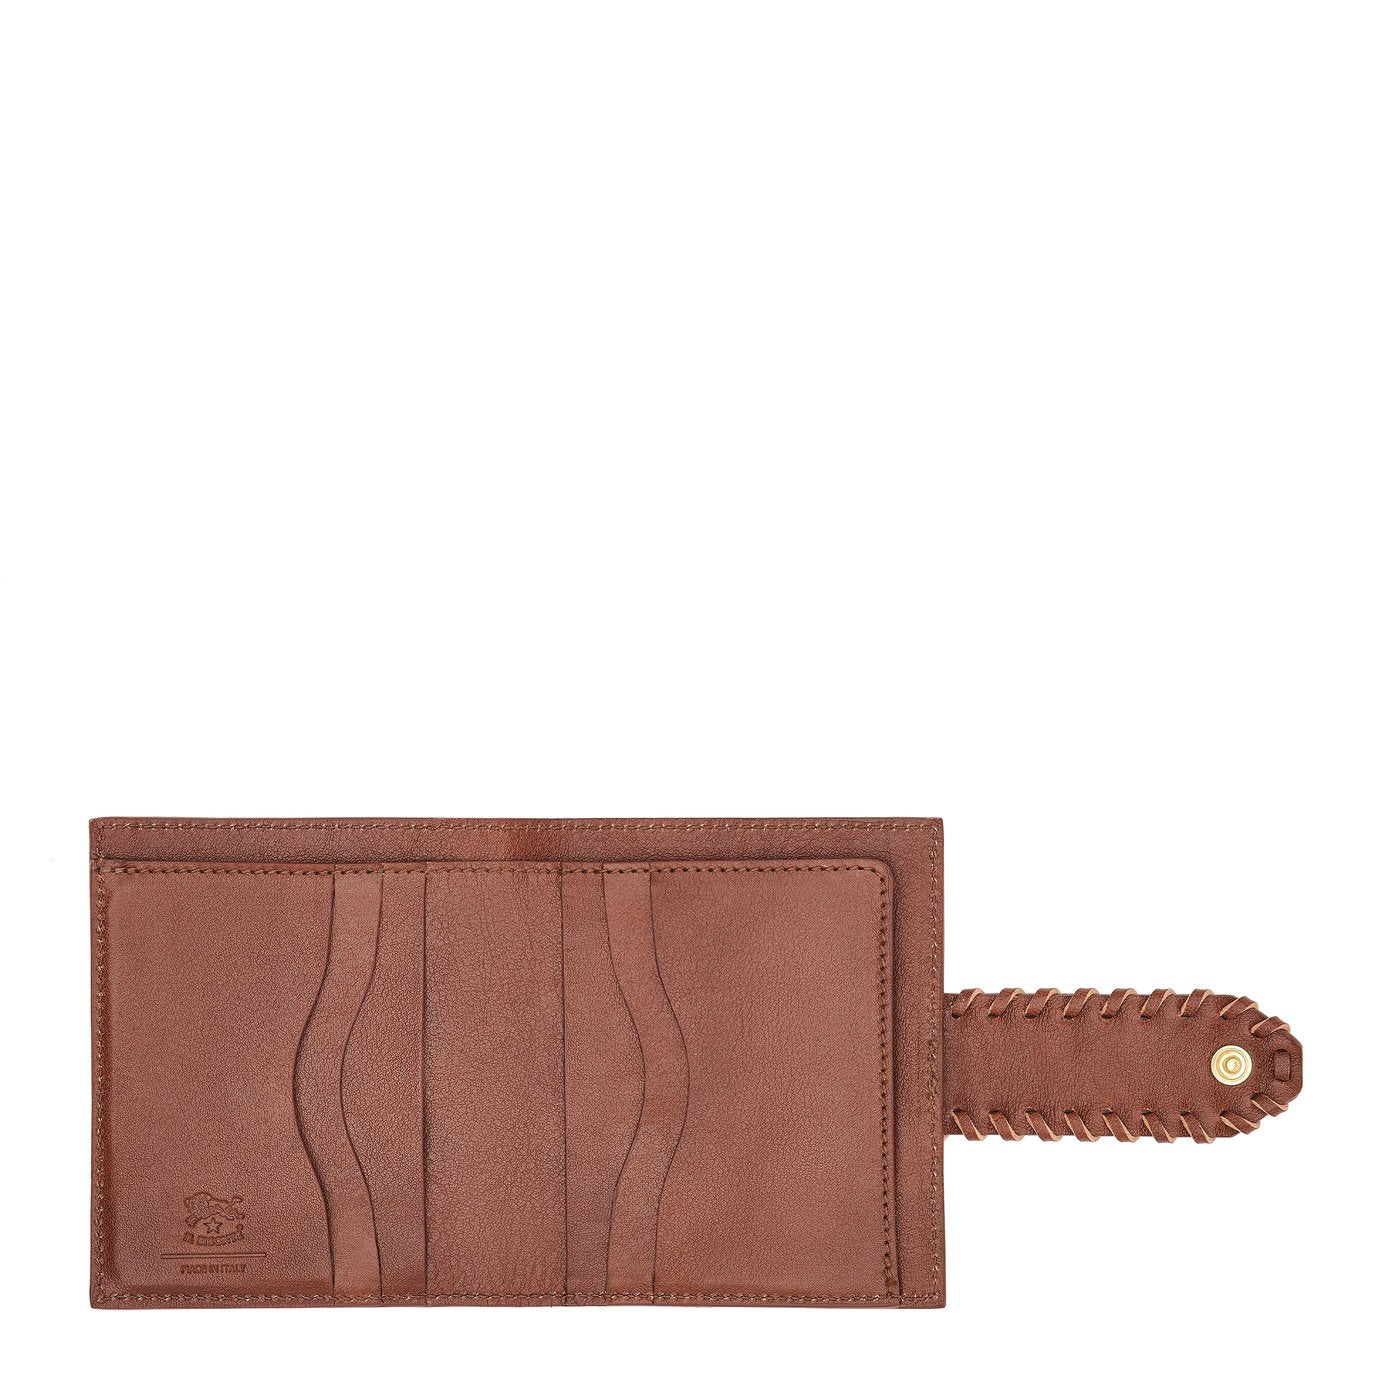 La fiaba | Women's small wallet in leather color arabica